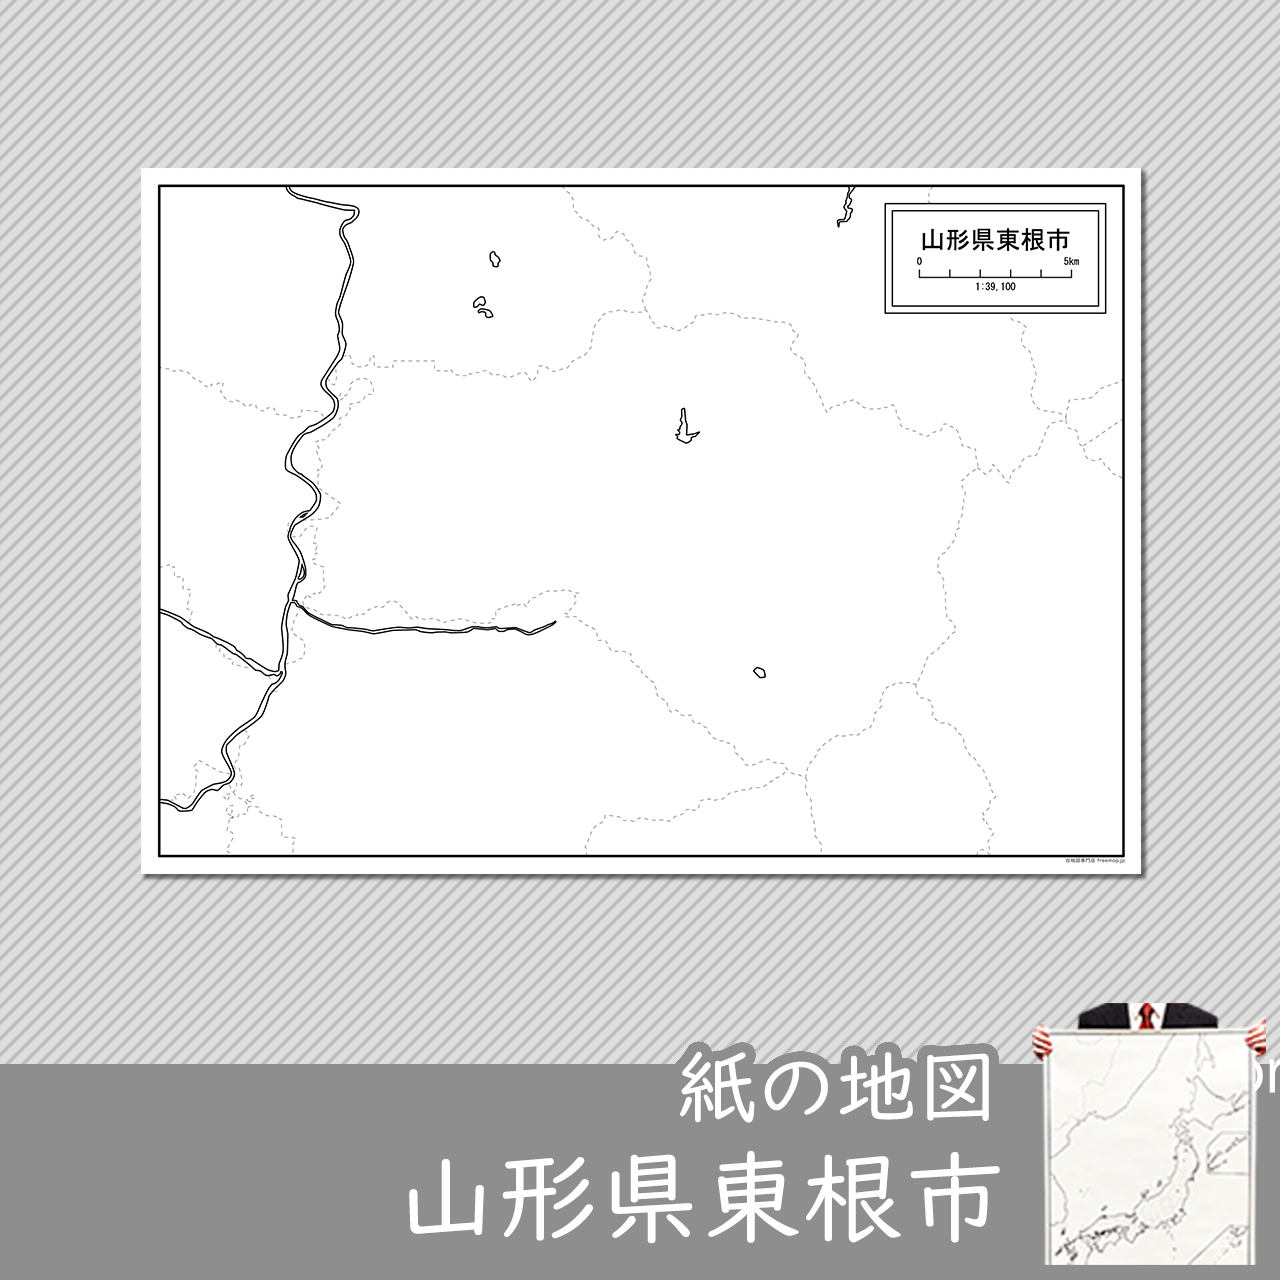 東根市の紙の白地図のサムネイル